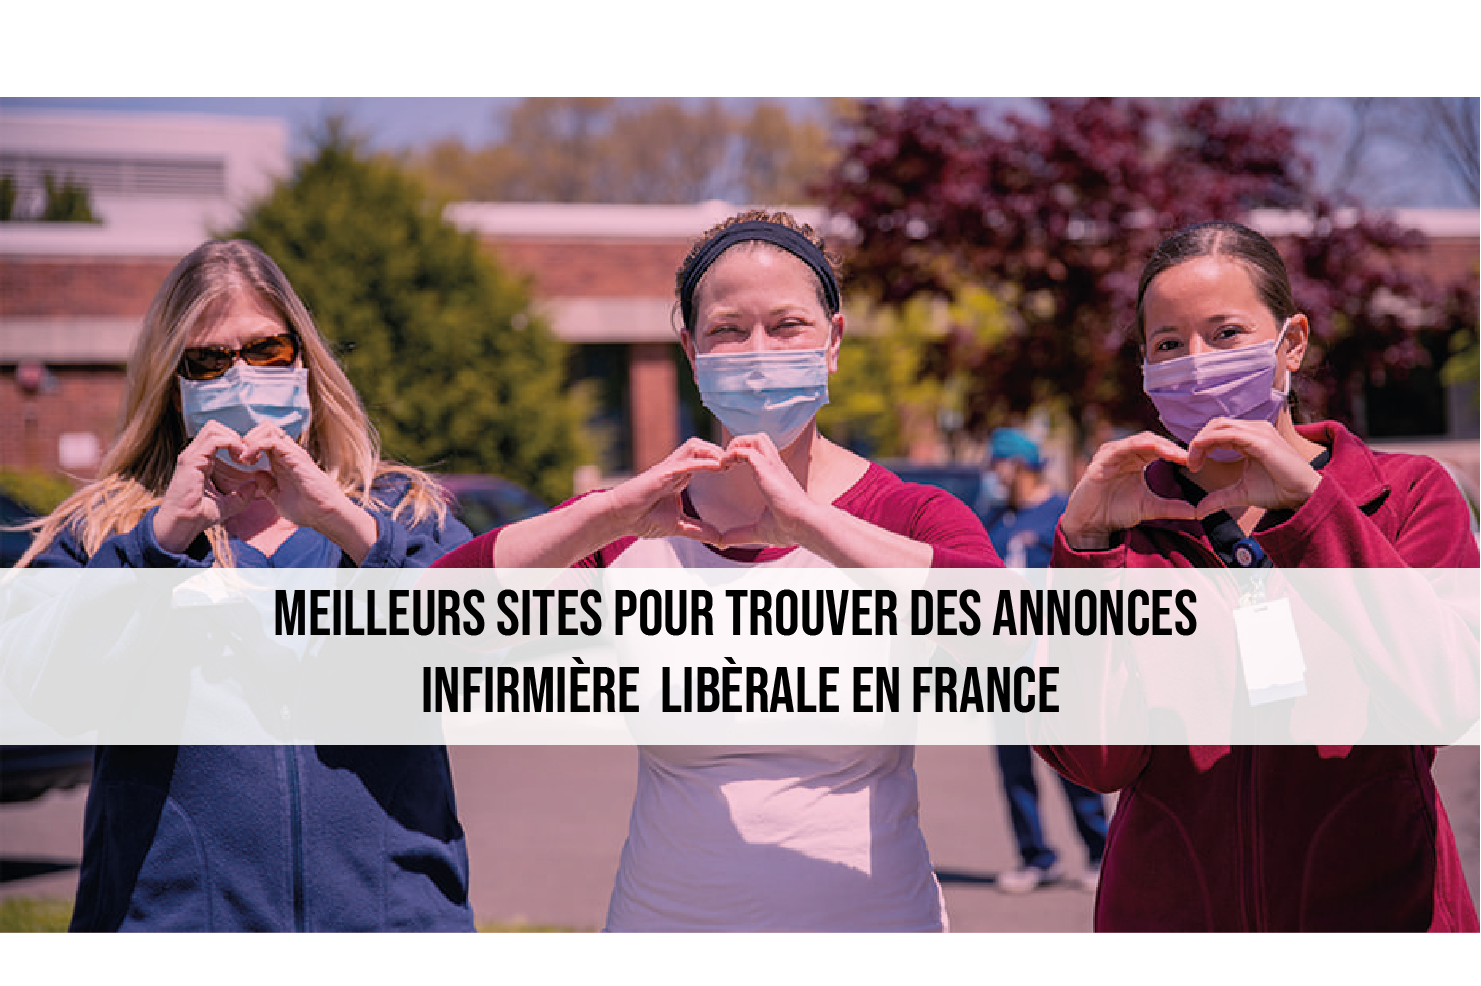 10 Meilleurs Sites pour Trouver des Annonces infirmière libérale en France